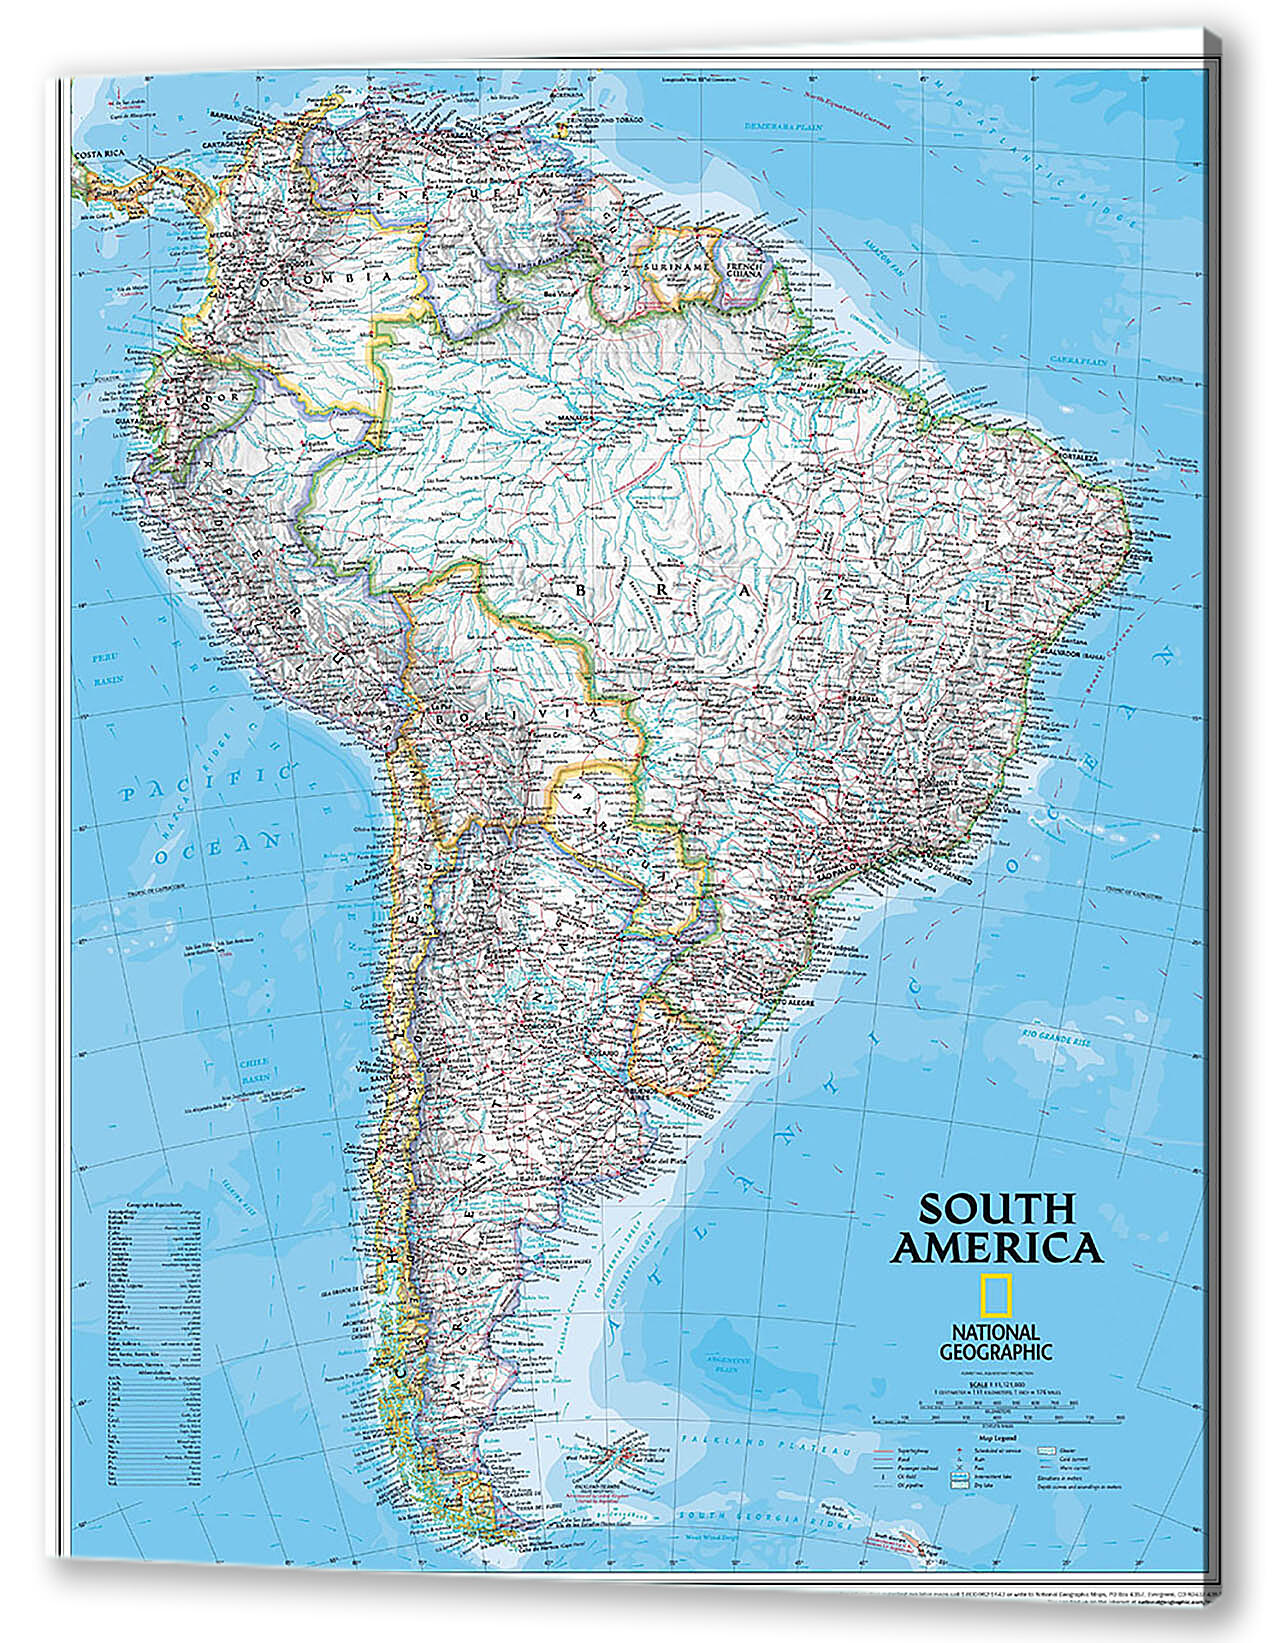 Картина маслом - Карта Южной Америки
